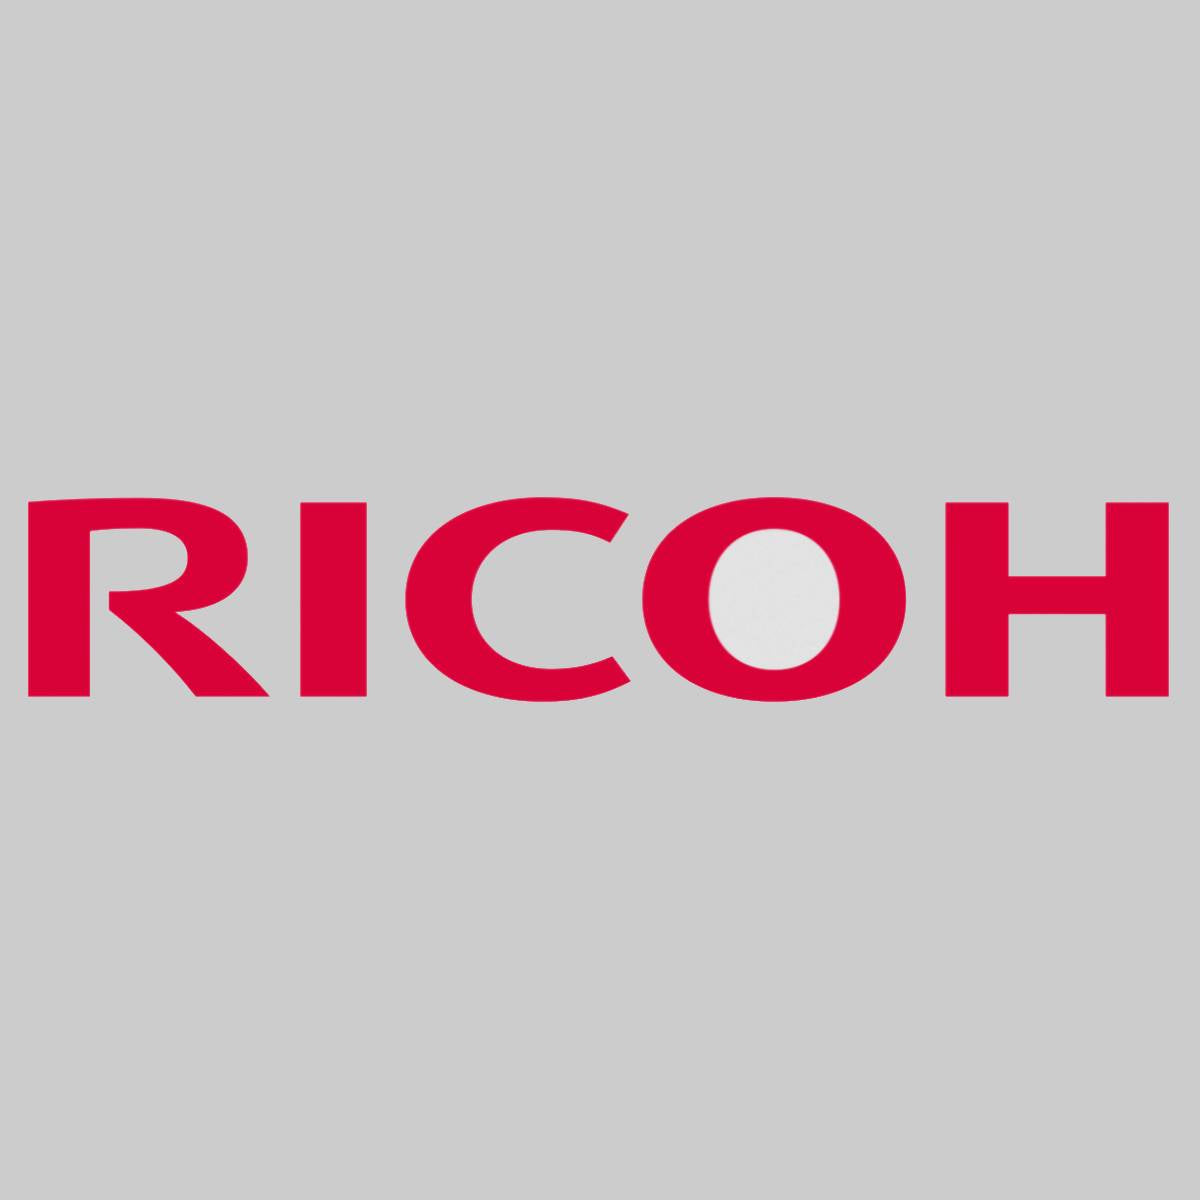 "Barre de revêtement d'origine Ricoh D179-3635 pour Ricoh Pro 8100 8110 8120 NOUVEAU OVP^